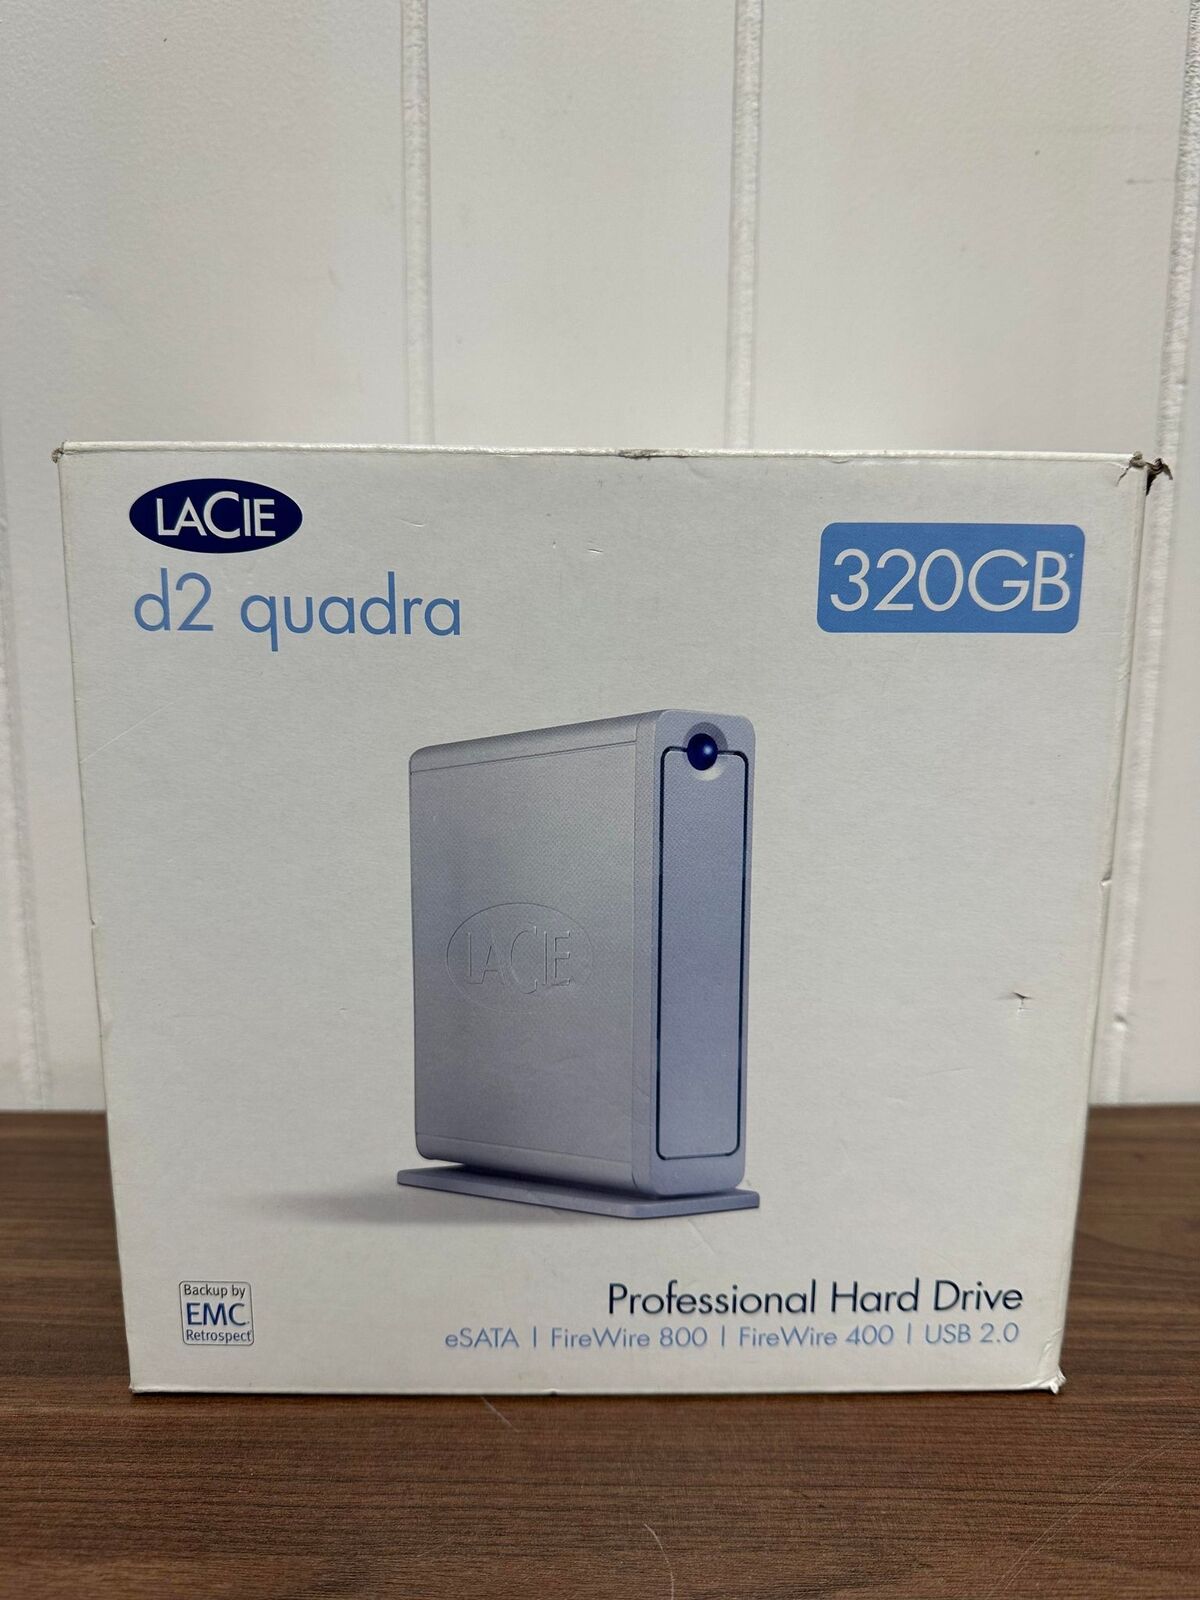 LACIE d2 quadra 320GB eSATA FireWire 800 400 USB 2 External Hard Drive Very Good